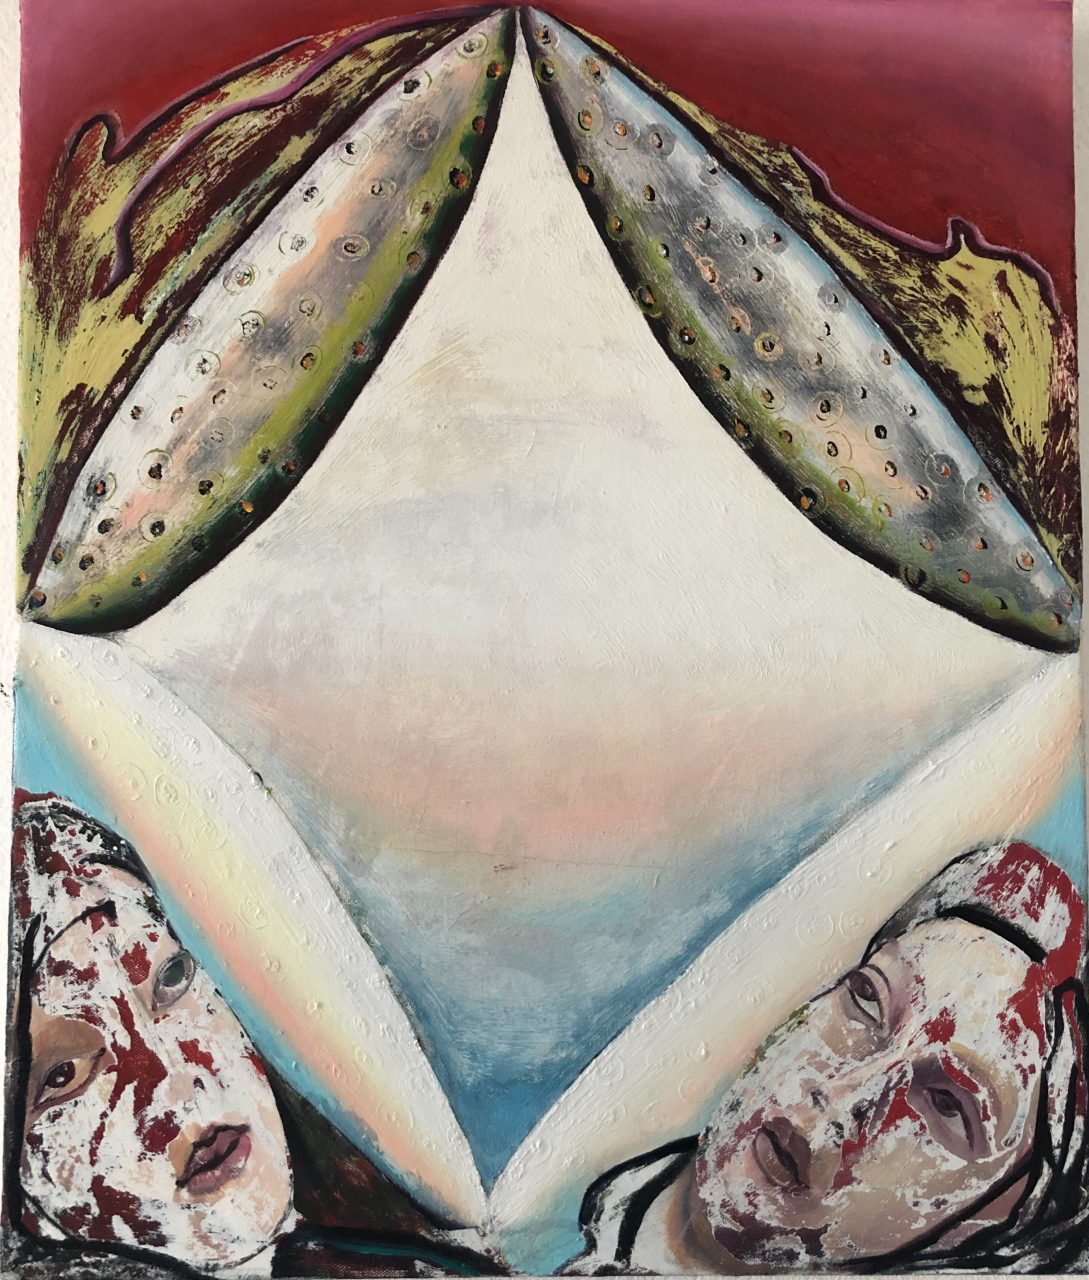 Astronaut 5, Oil on Canvas, 50x60, 2019